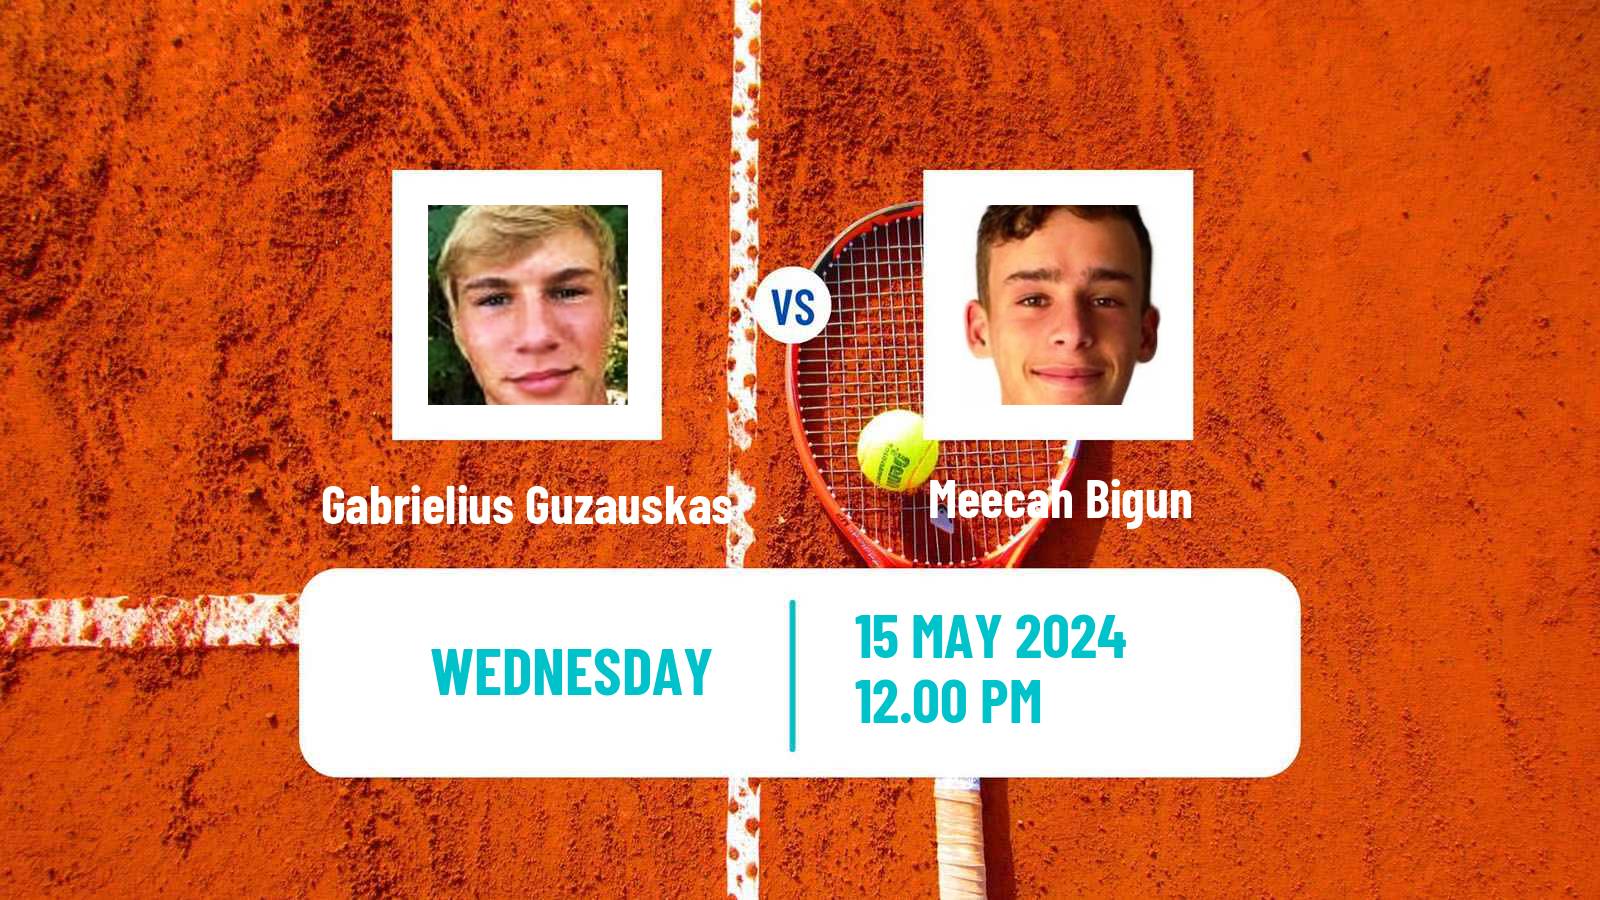 Tennis ITF M25 Pensacola Fl Men Gabrielius Guzauskas - Meecah Bigun